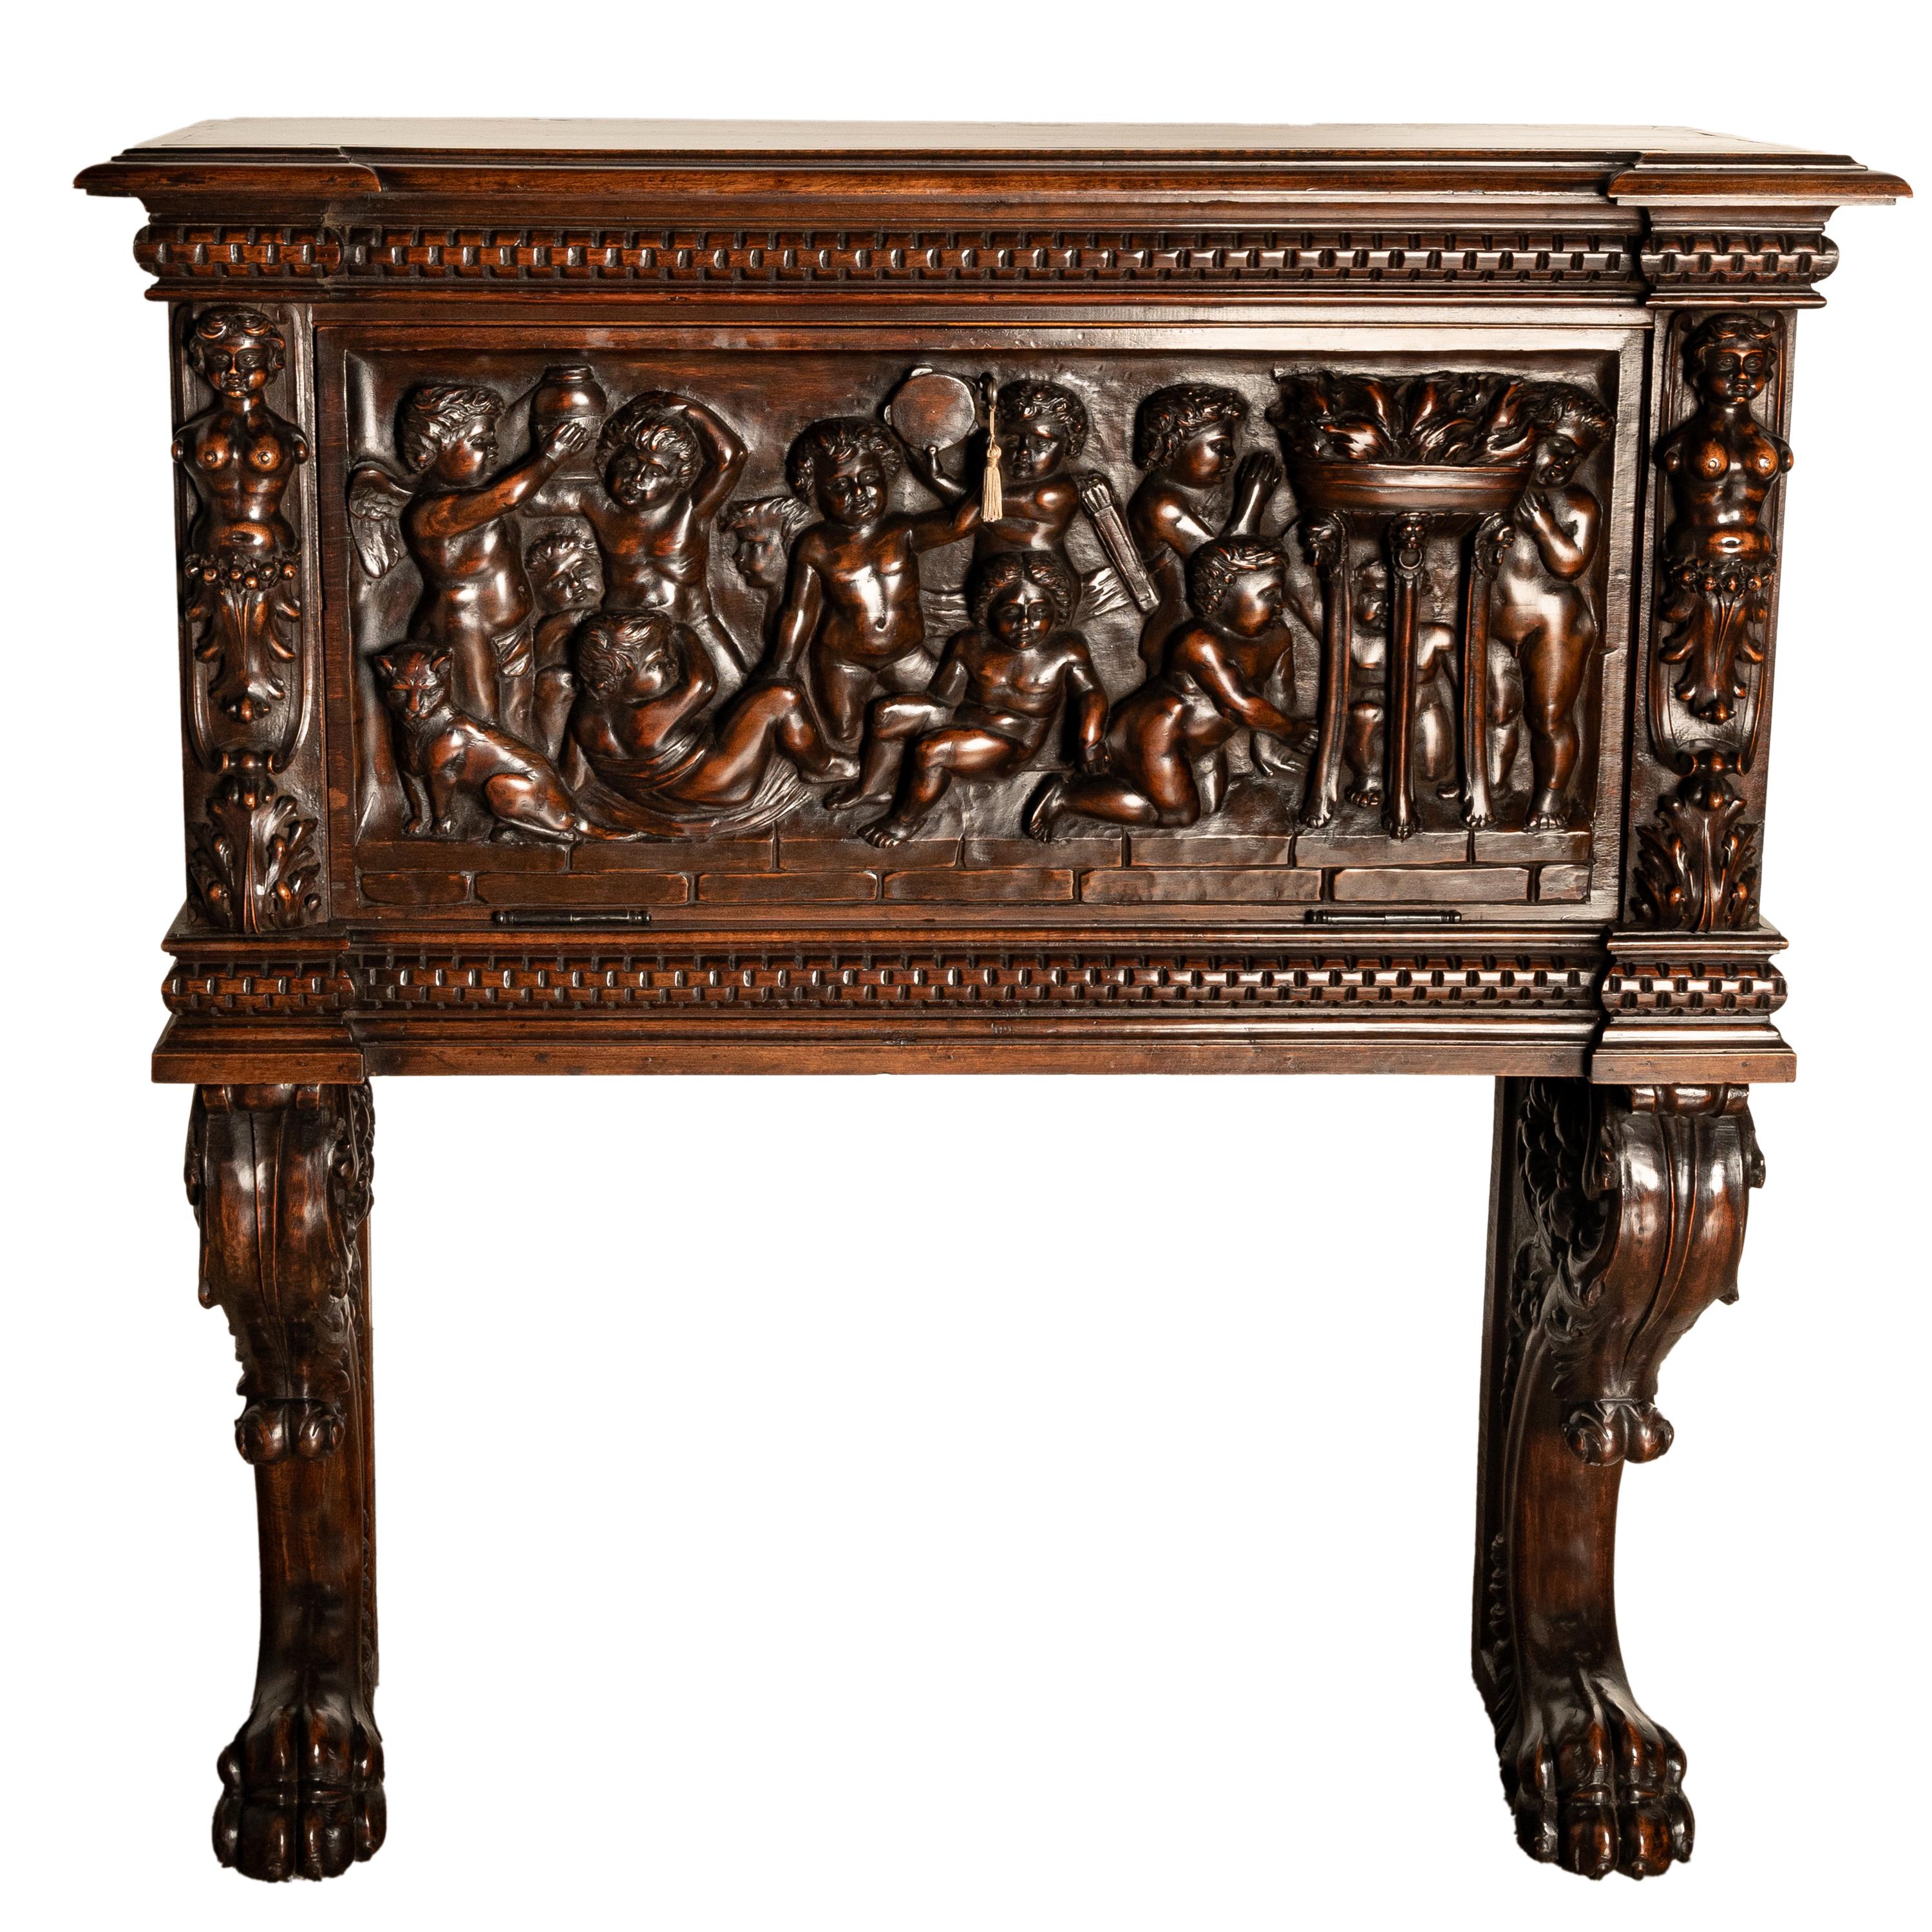 Très beau cabinet italien ancien sculpté de style Renaissance Florentine sur pied, vers 1880.
Le meuble présente certaines des plus belles sculptures que nous ayons vues sur un meuble de la fin du XIXe siècle, en deux parties. La partie supérieure